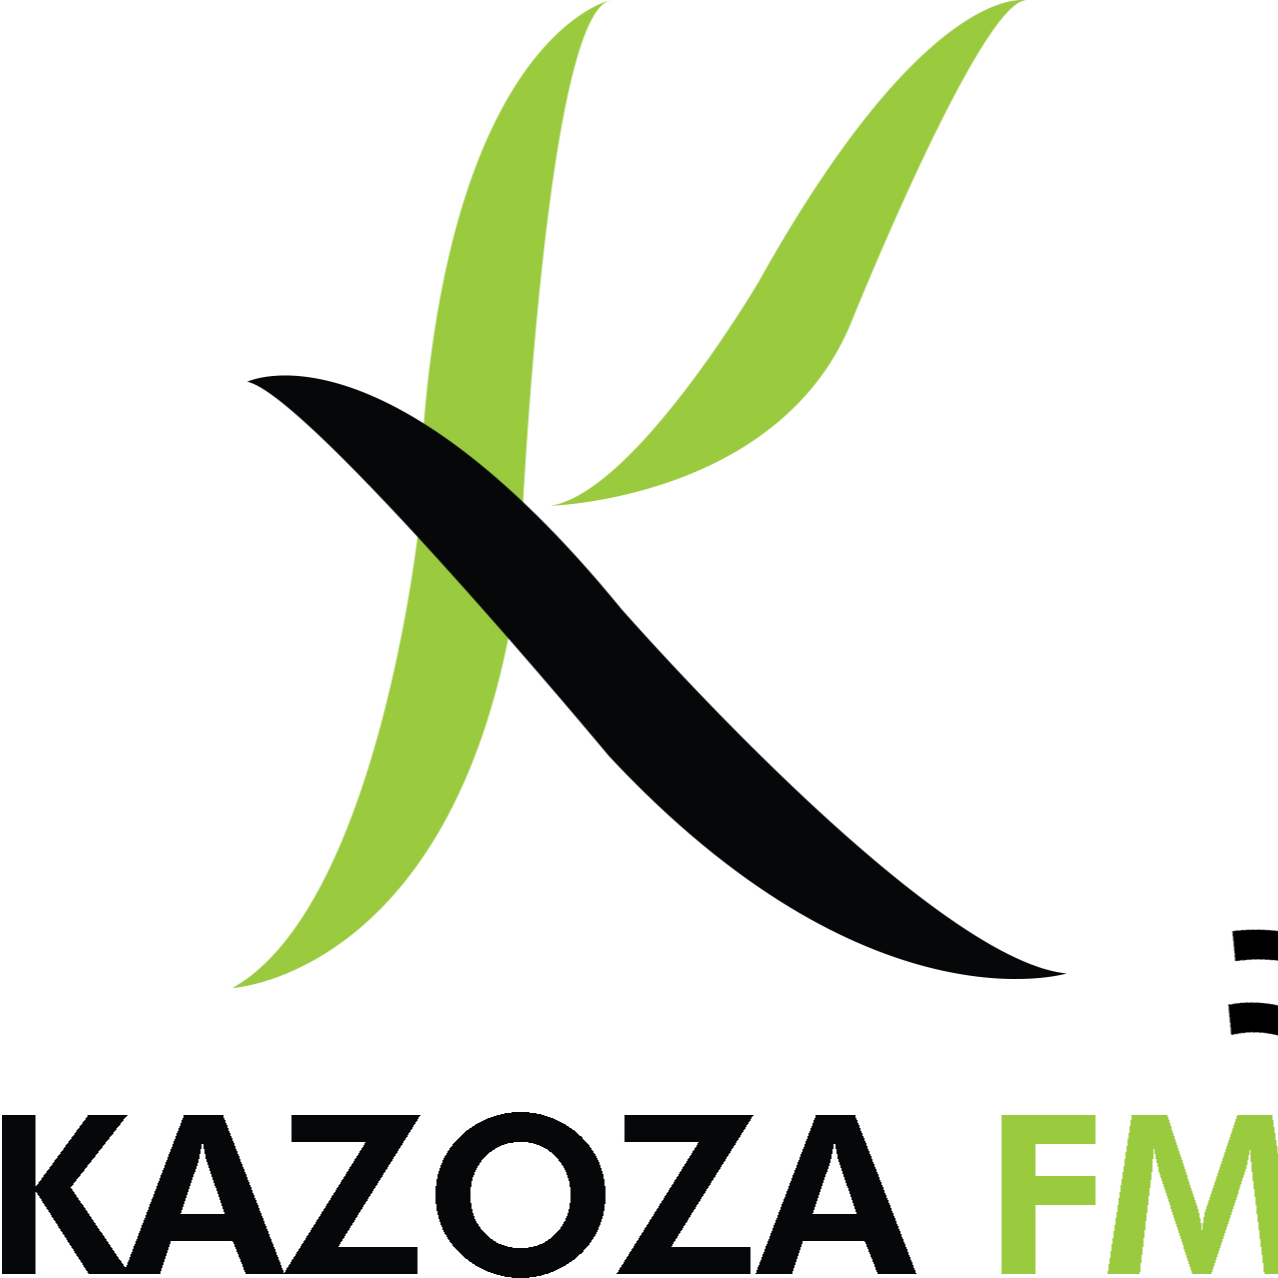 RADIO KAZOZA FM